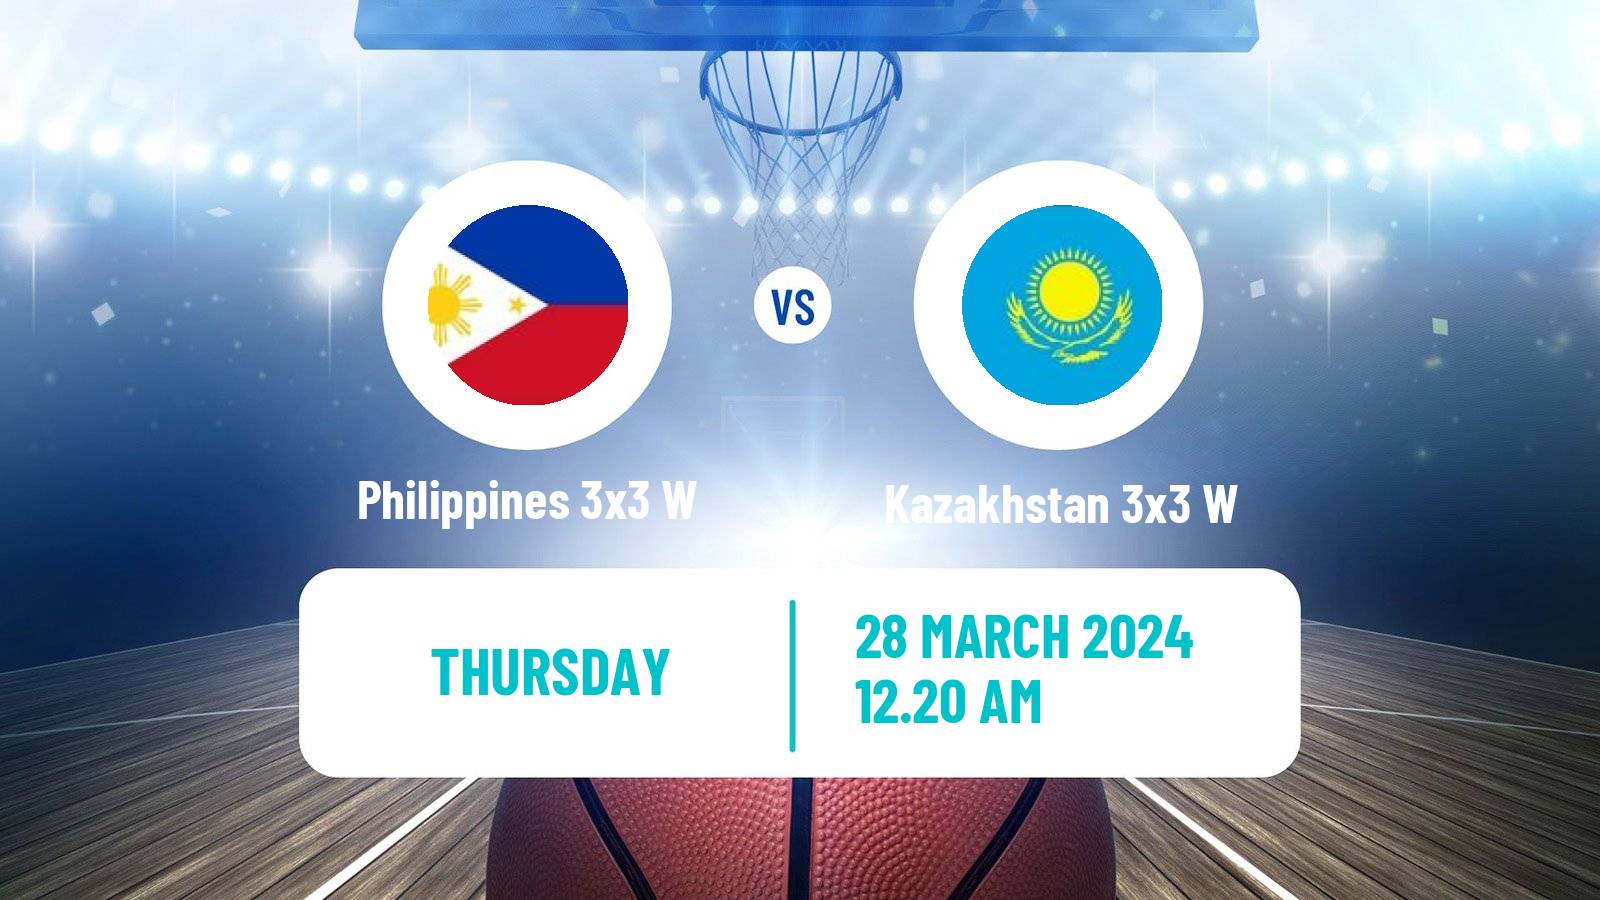 Basketball Asia Cup 3x3 Women Philippines 3x3 W - Kazakhstan 3x3 W